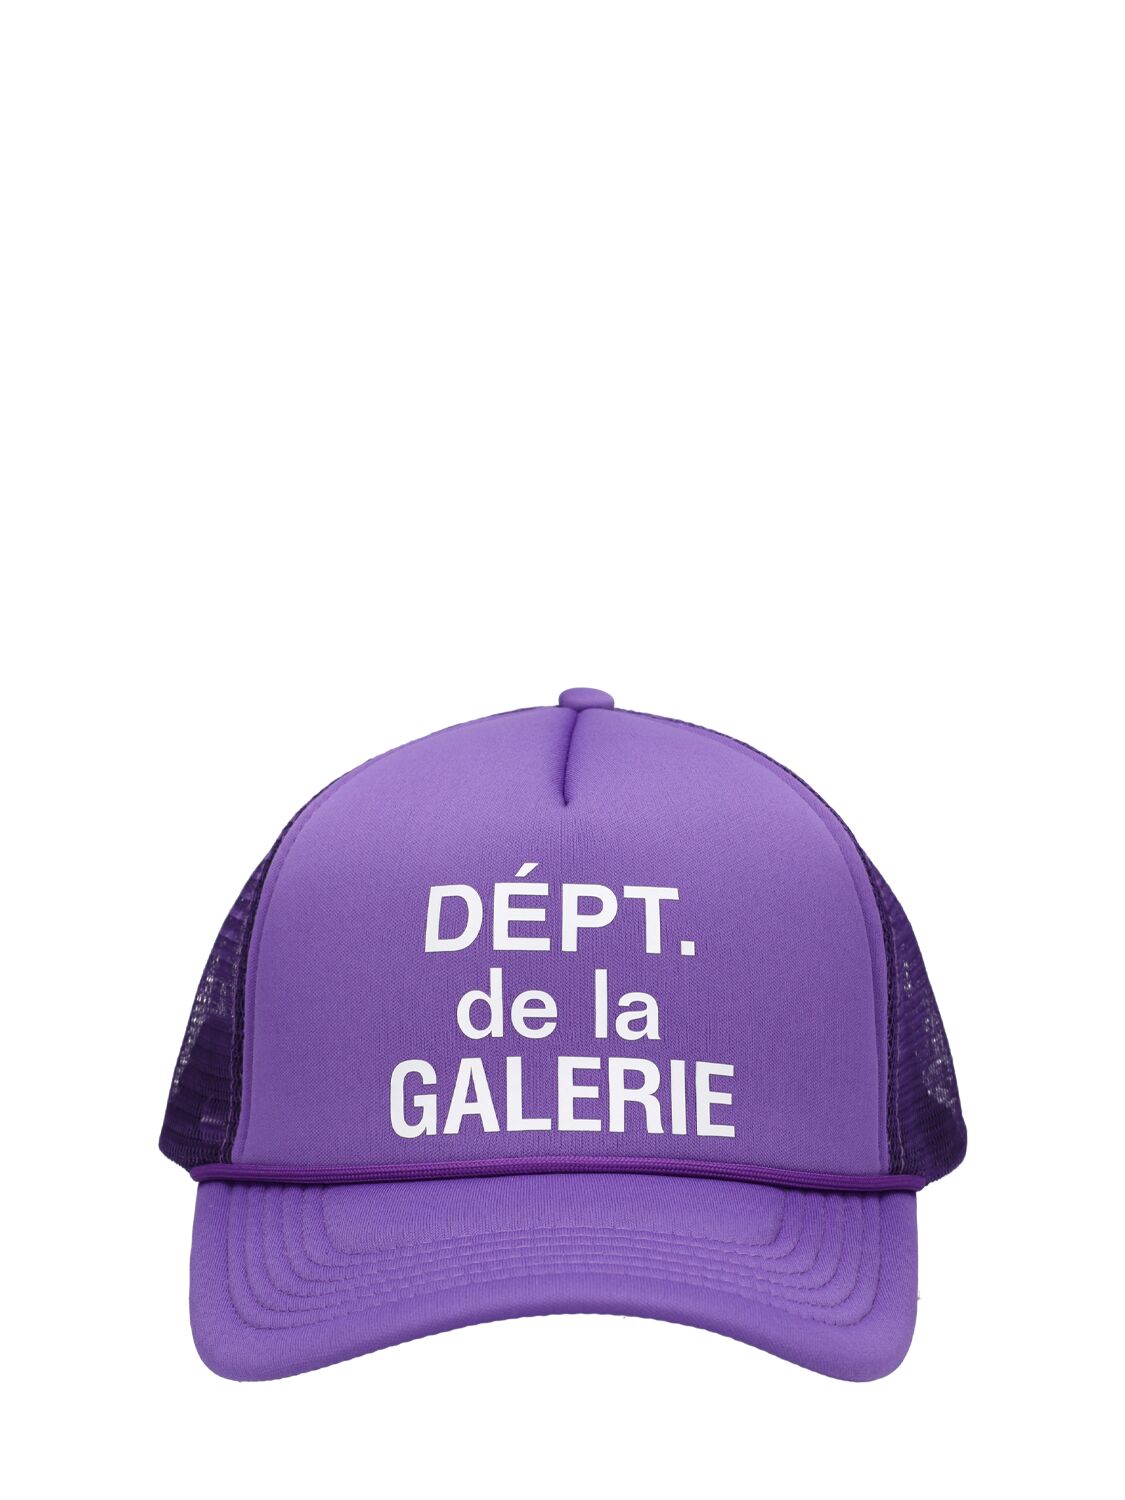 Gallery Dept. French Logo Trucker Hat In Flo Purple